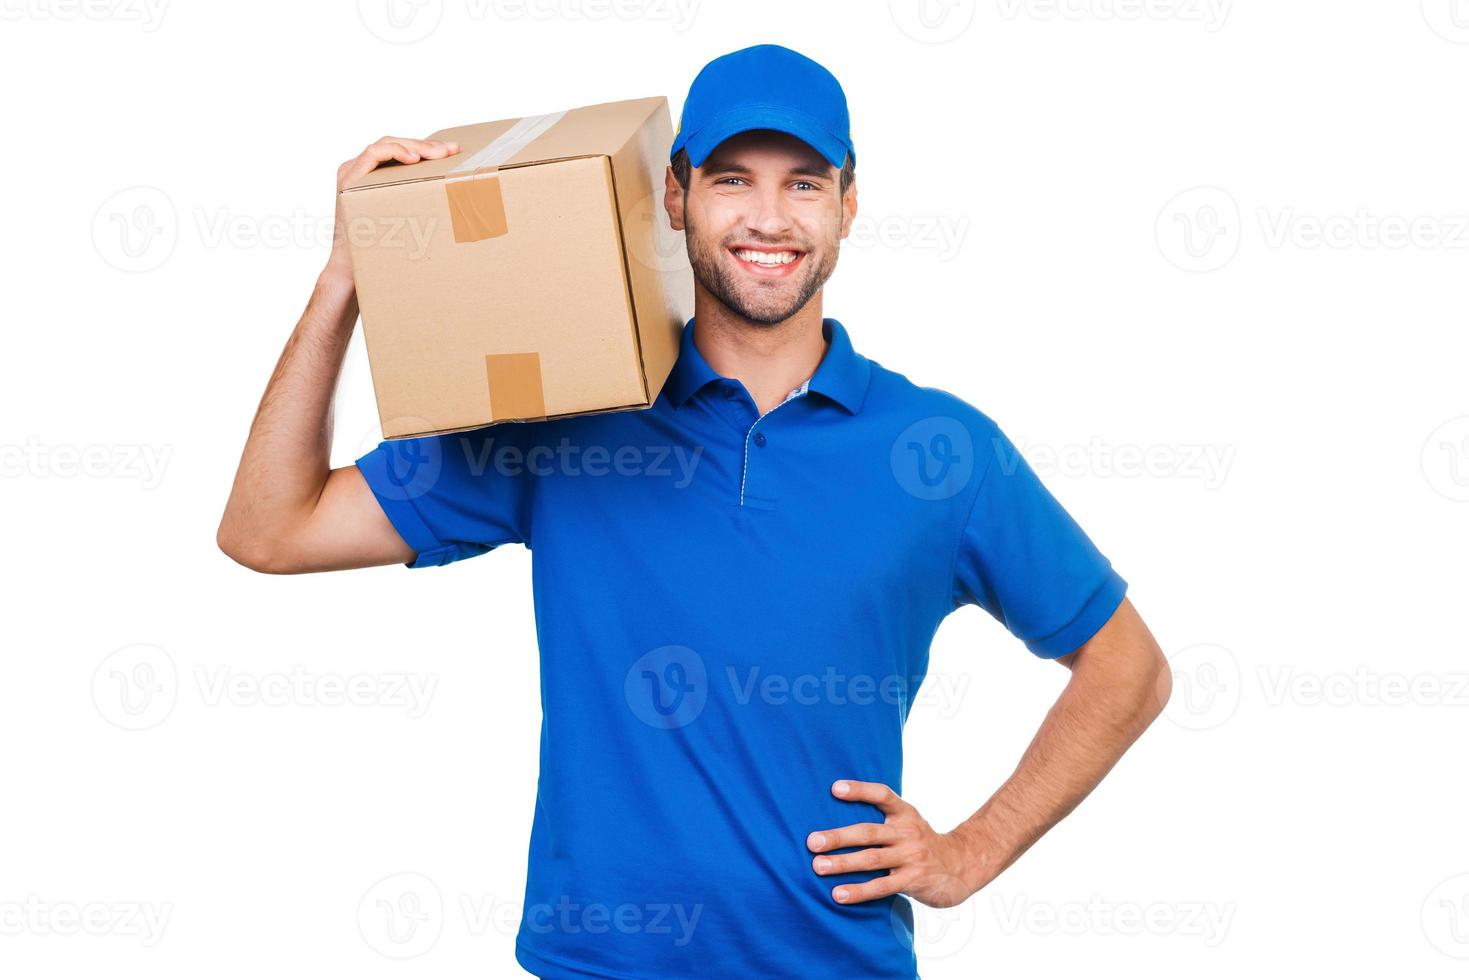 repartidor confiado. mensajero joven alegre que lleva la caja de cartón en el hombro y sonriendo mientras está de pie contra el fondo blanco foto